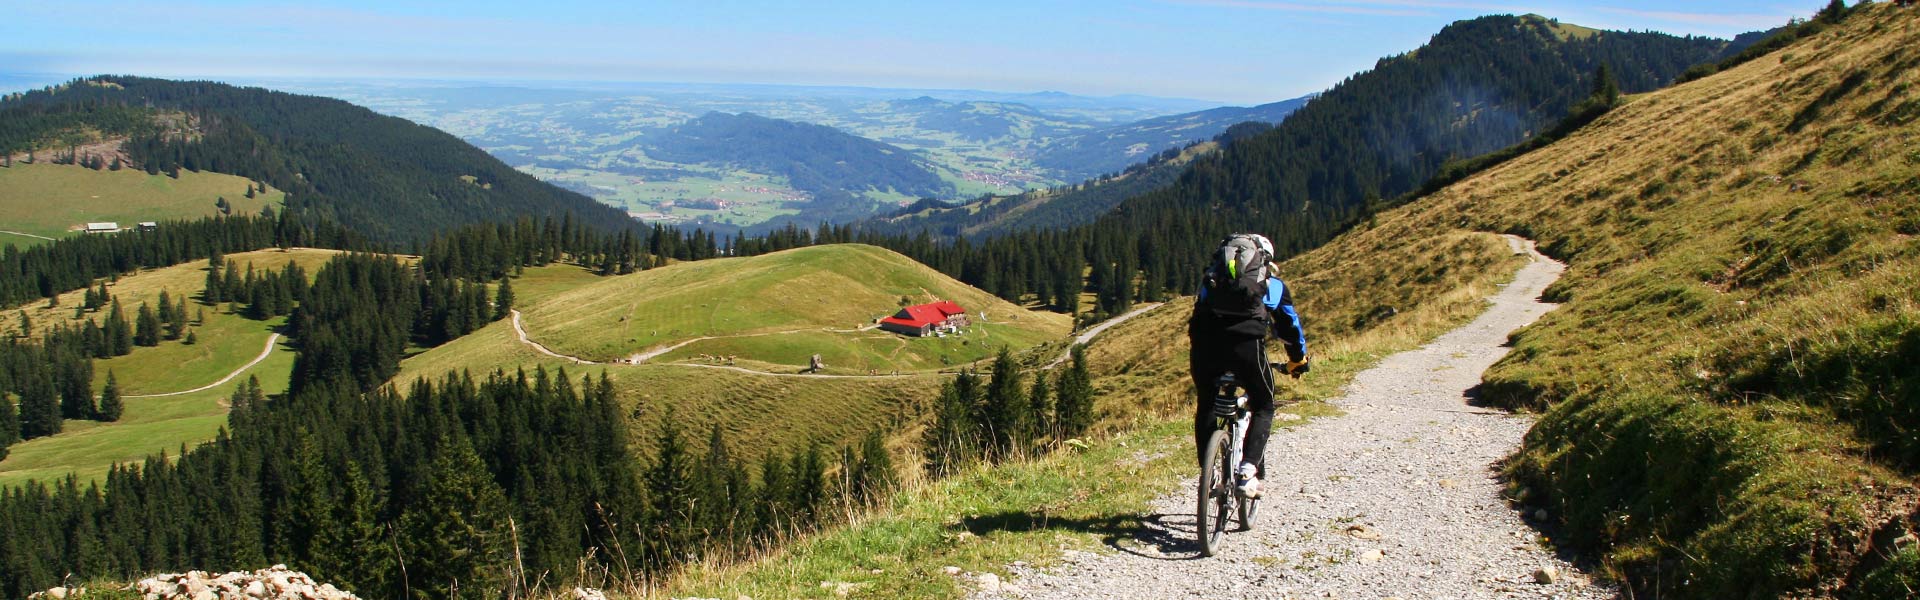 Mountainbike Technik Videos und Tourenvideos vom MTB fahren im Allgäu